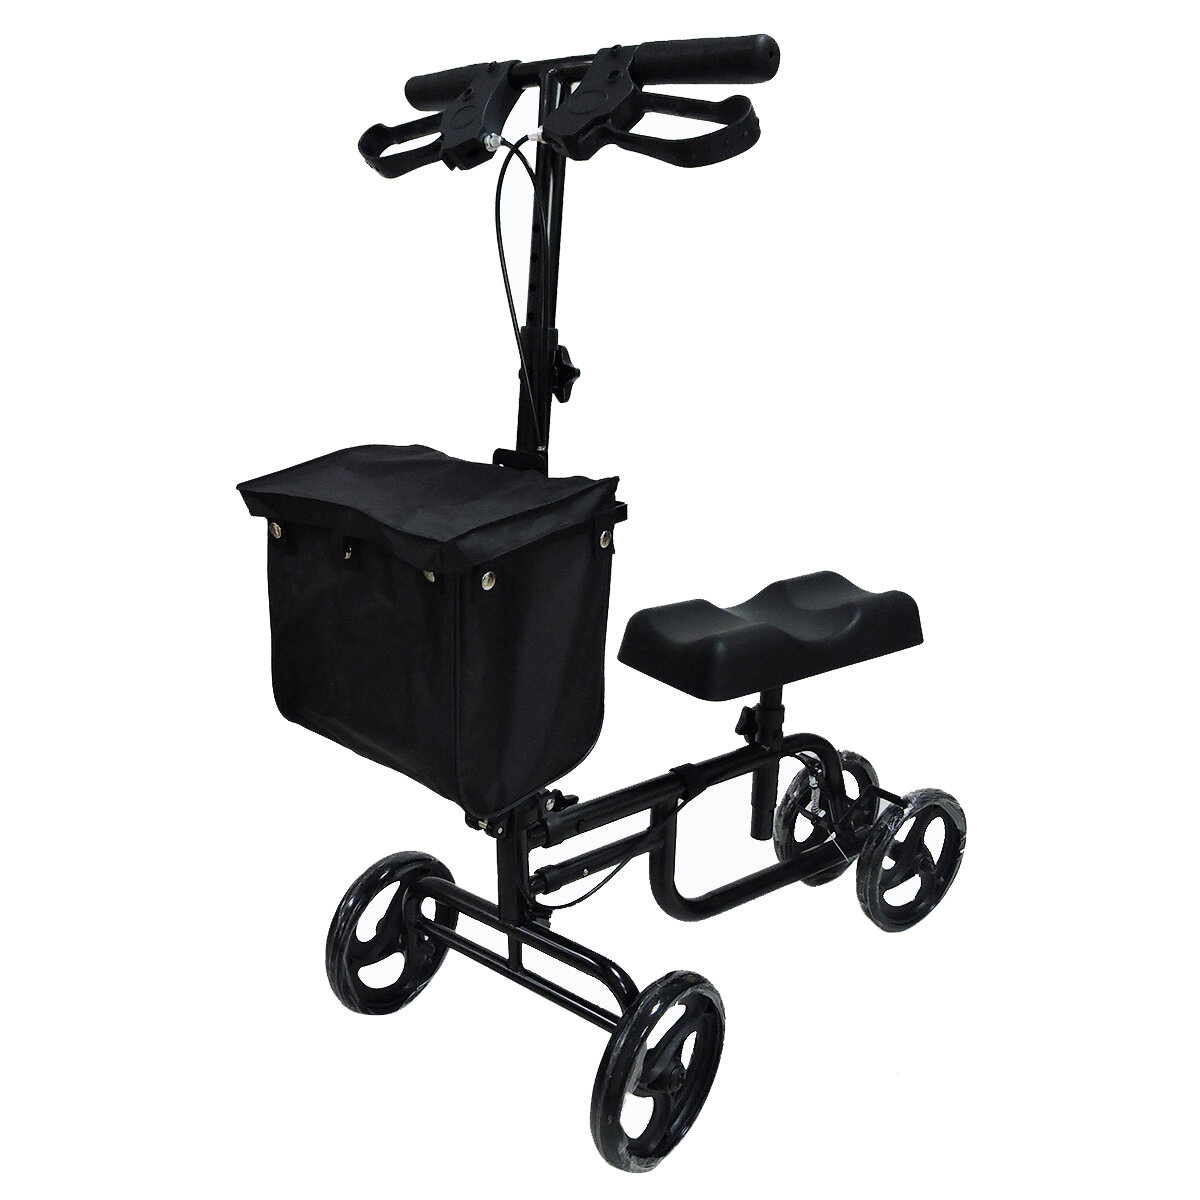 Mobility Knee Walker Scooter Roller Crutch Leg Steerable Foldable Design Adjustable Height Adjustabl